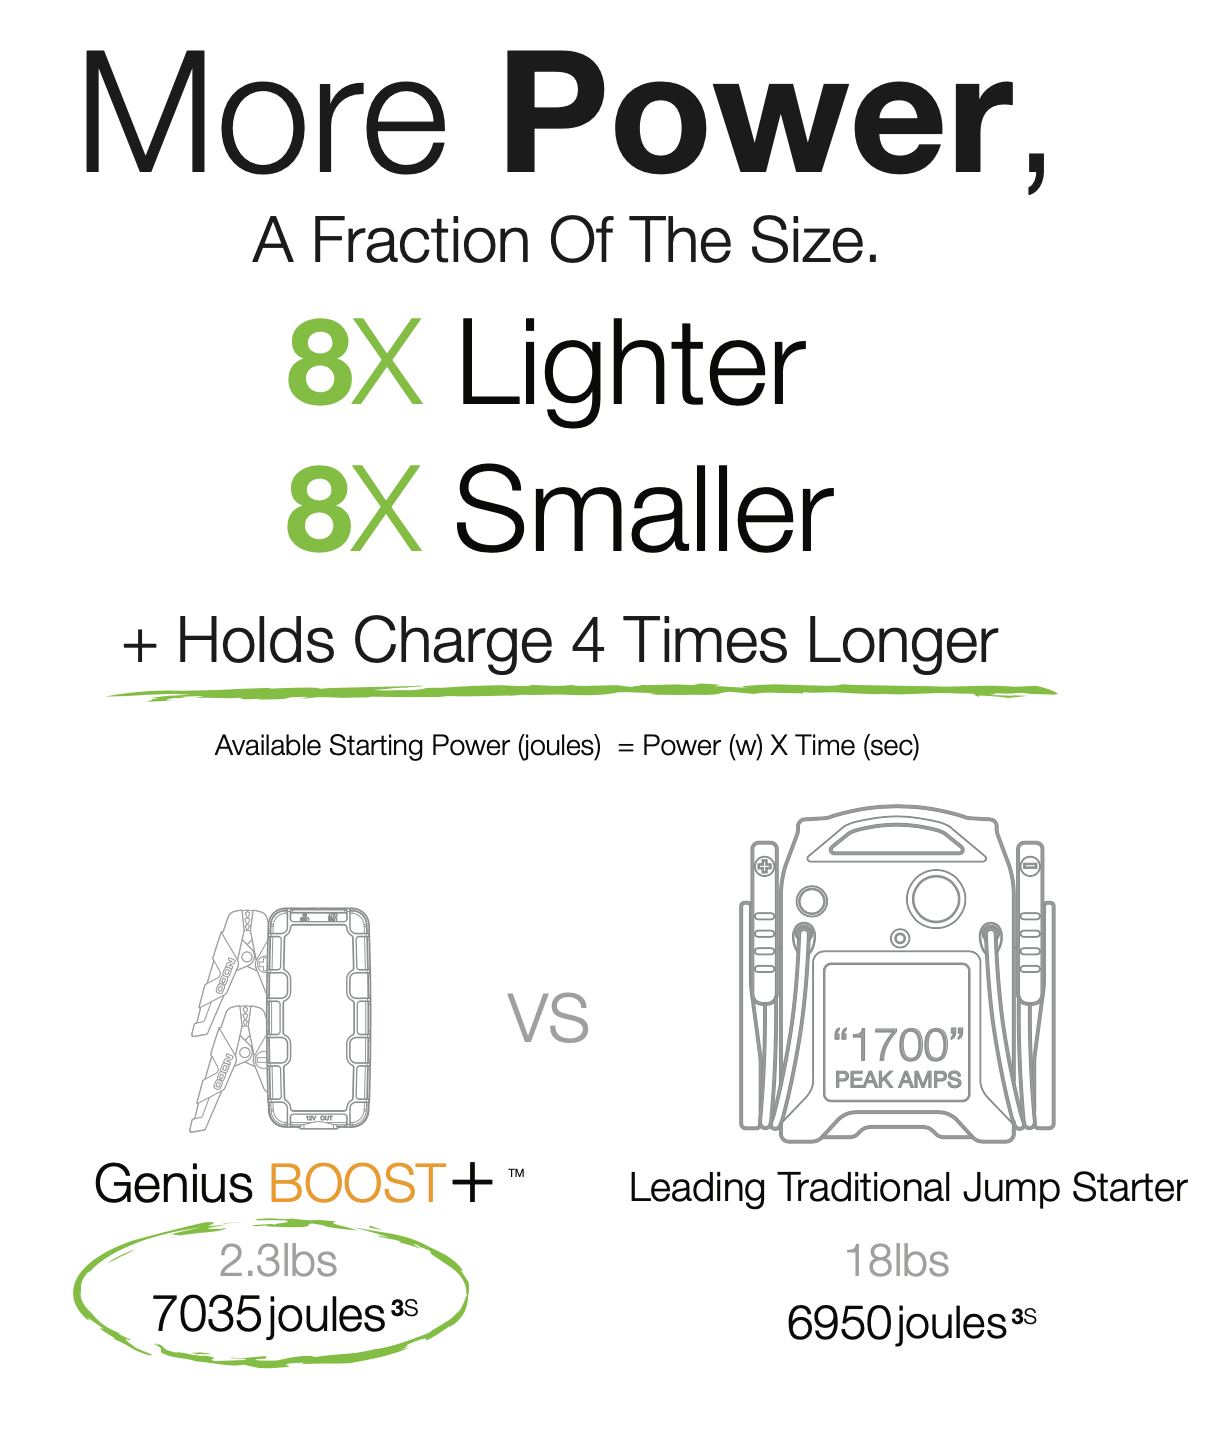 NOCO Genius Boost Plus GB40 Lithium 1000A Jump Starter